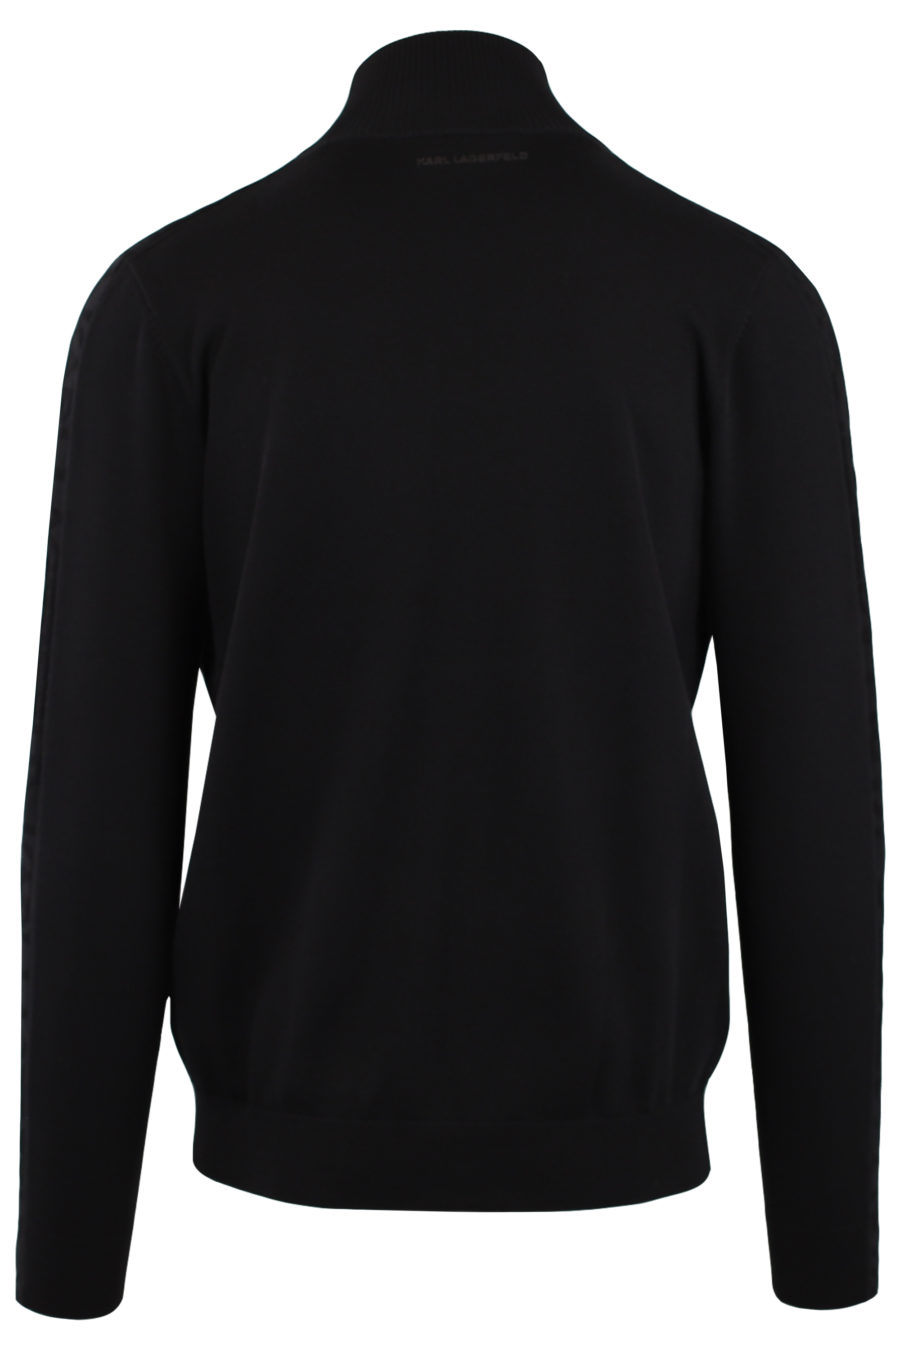 Jersey negro con cremallera y logo engomado de "Karl" - IMG 9158